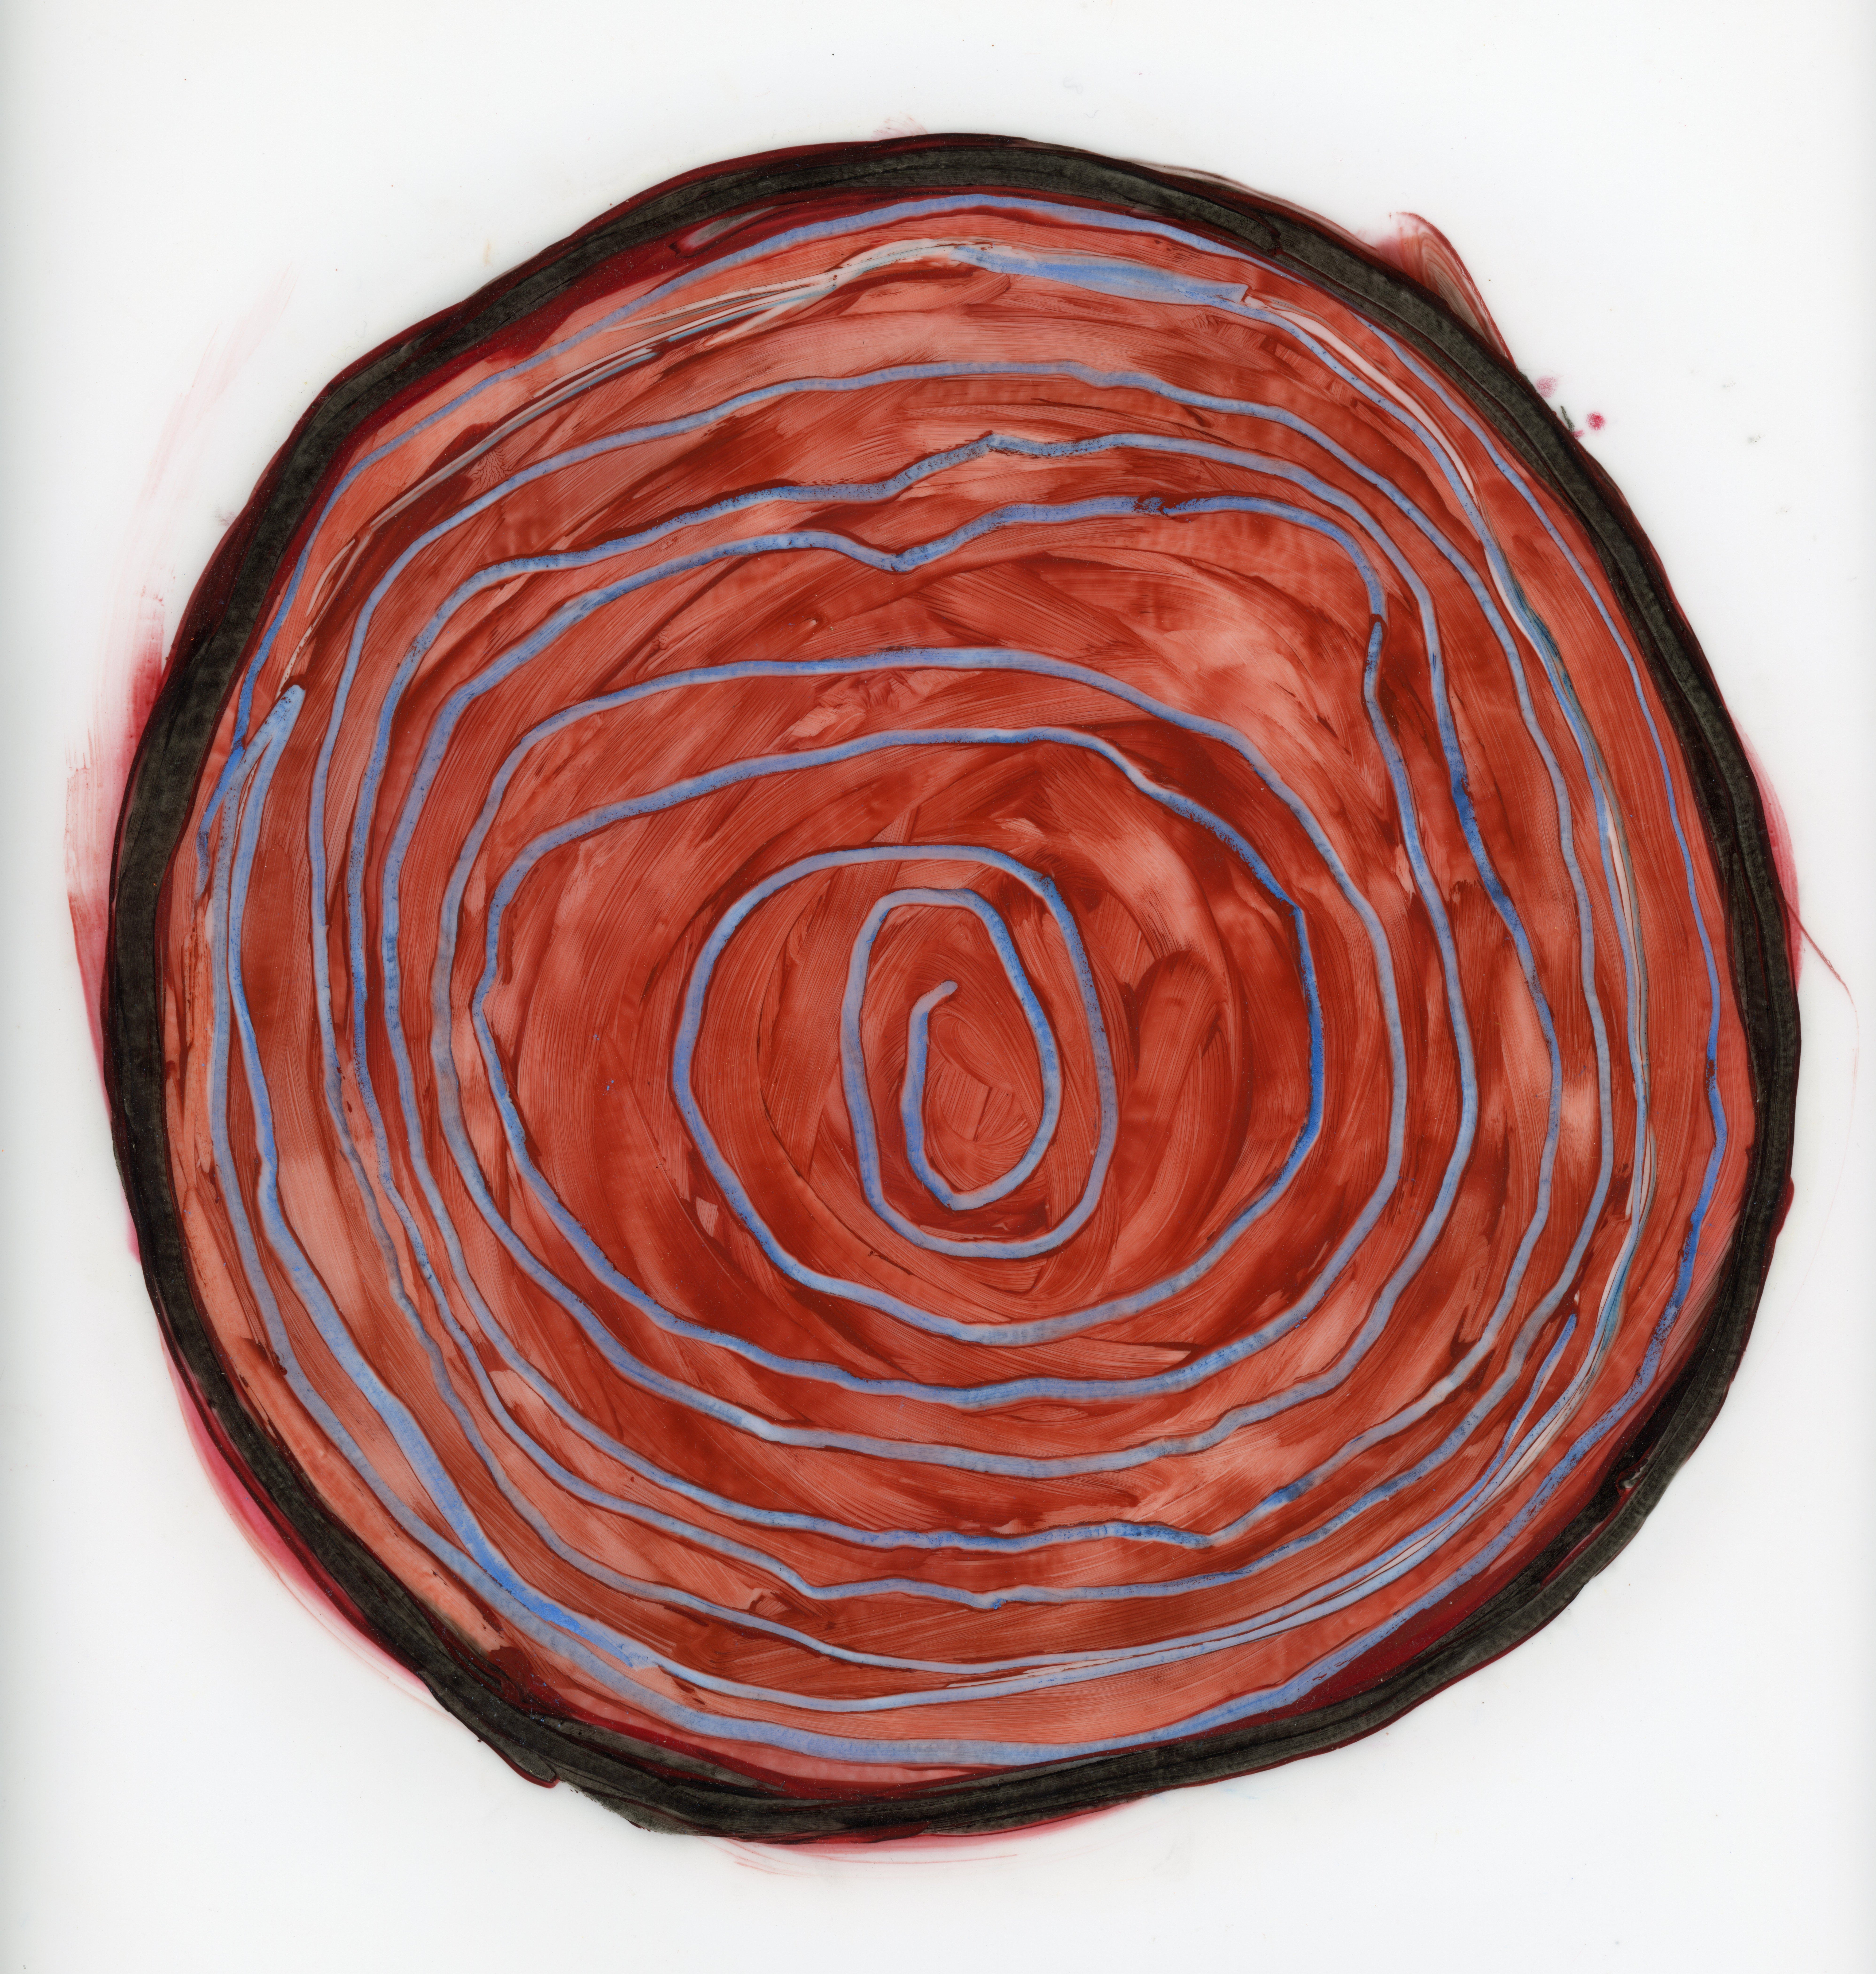 Abstract Painting Vincent Salvati - "Dessin de cercle #3 Dessin abstrait original contemporain